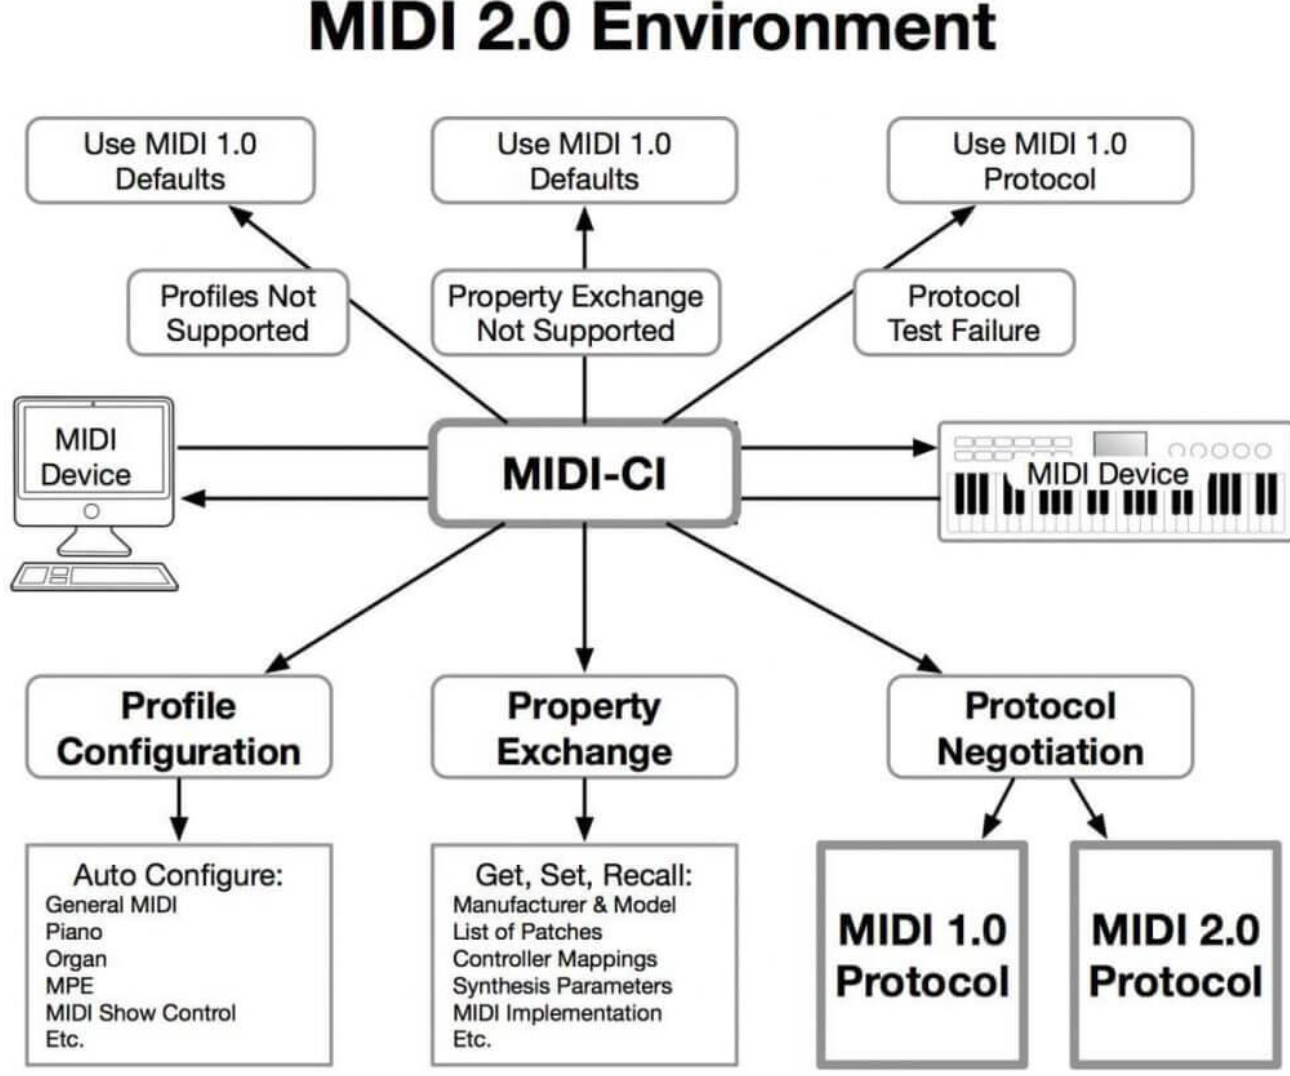 MIDI 2.0 scheme